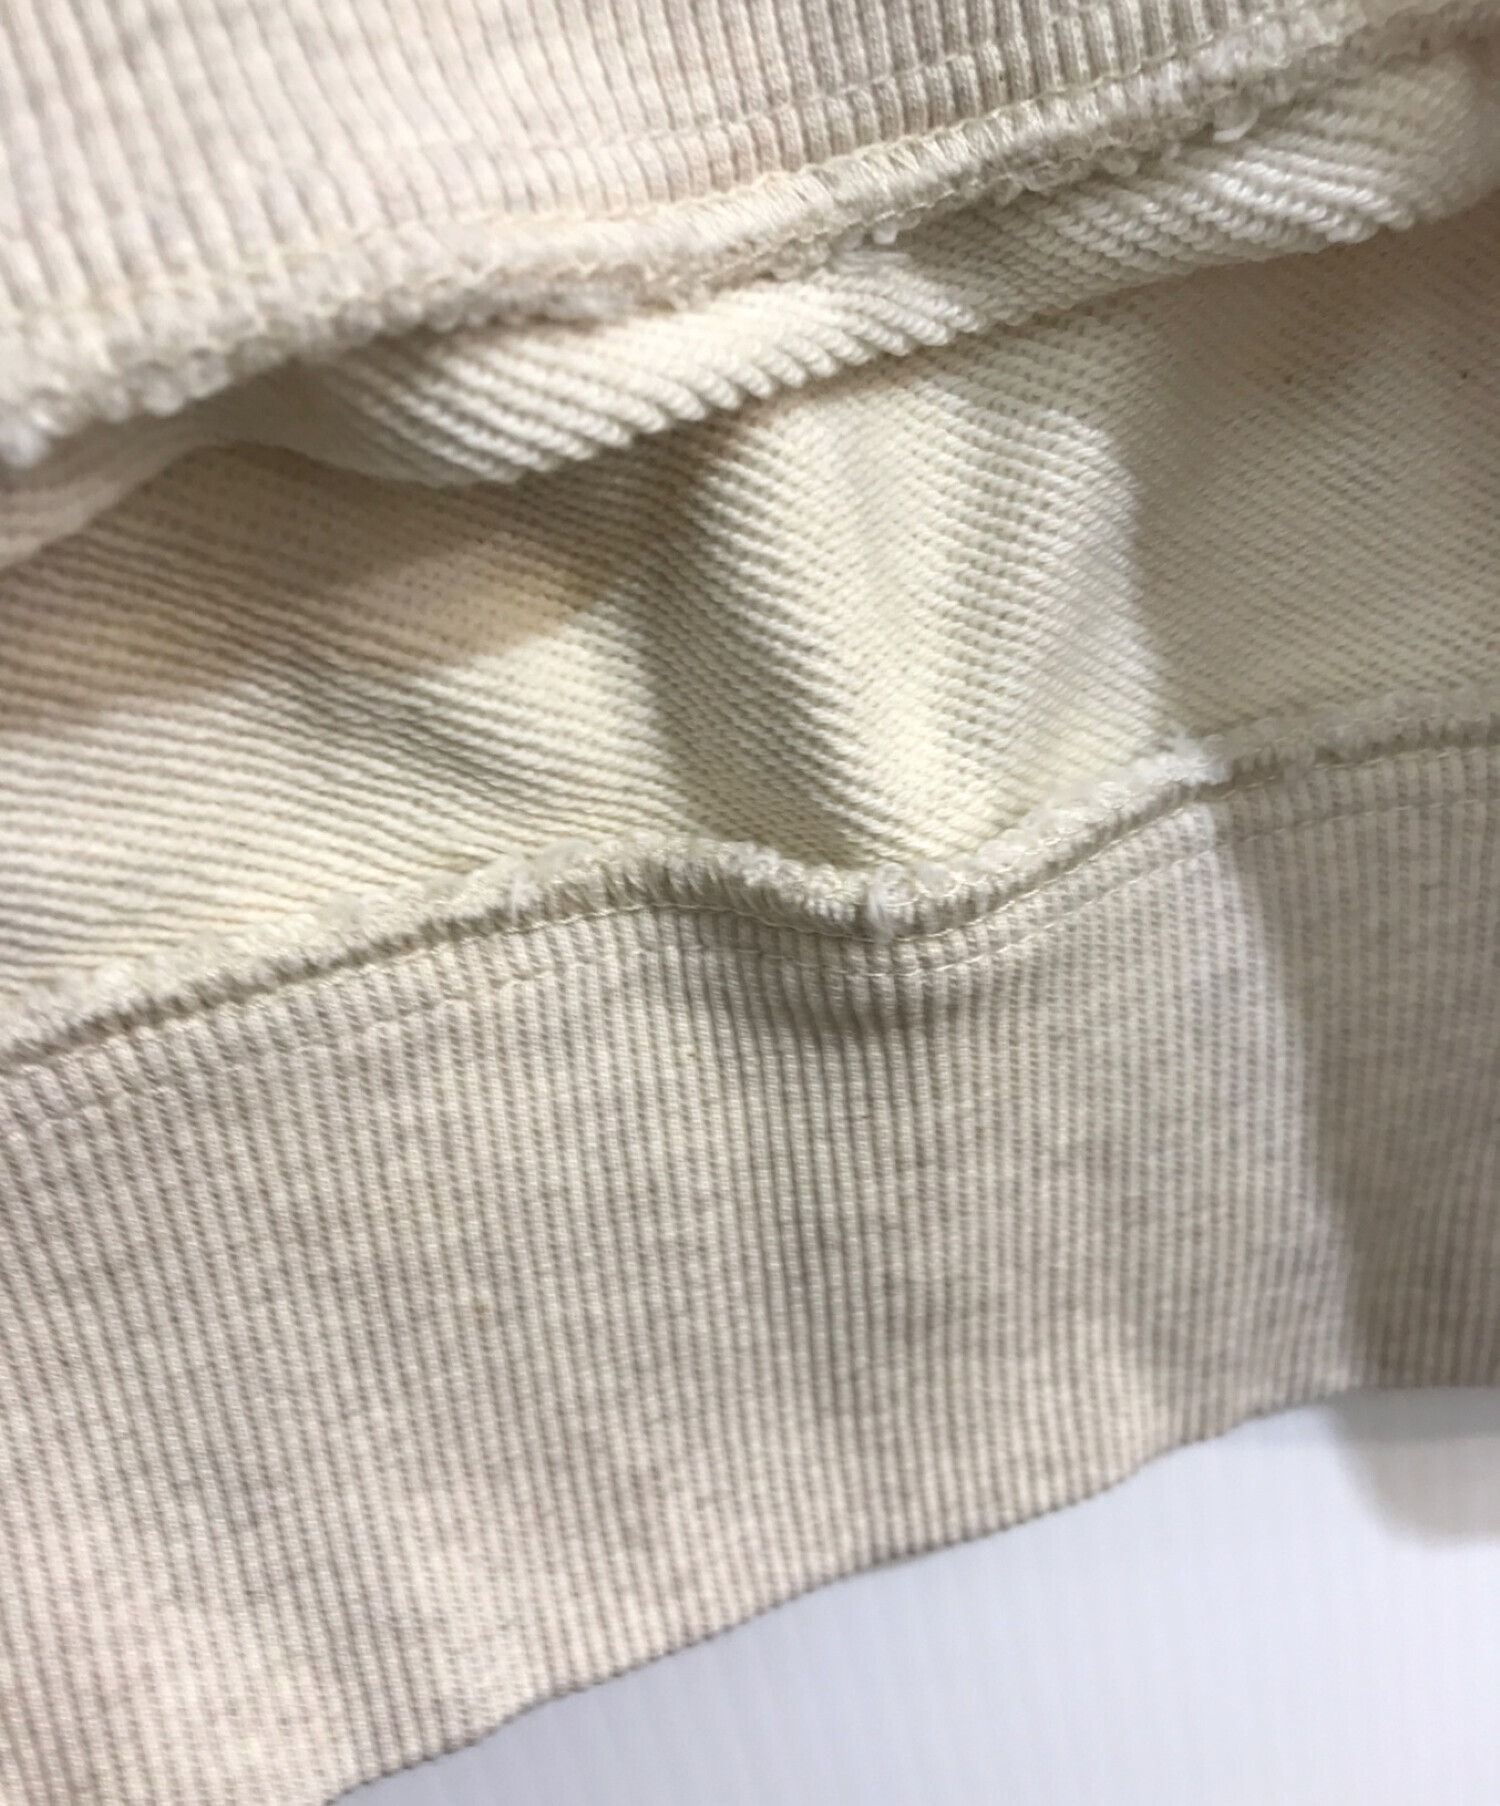 ニット/セーターDiesel Beige Stripe Sweatshirt